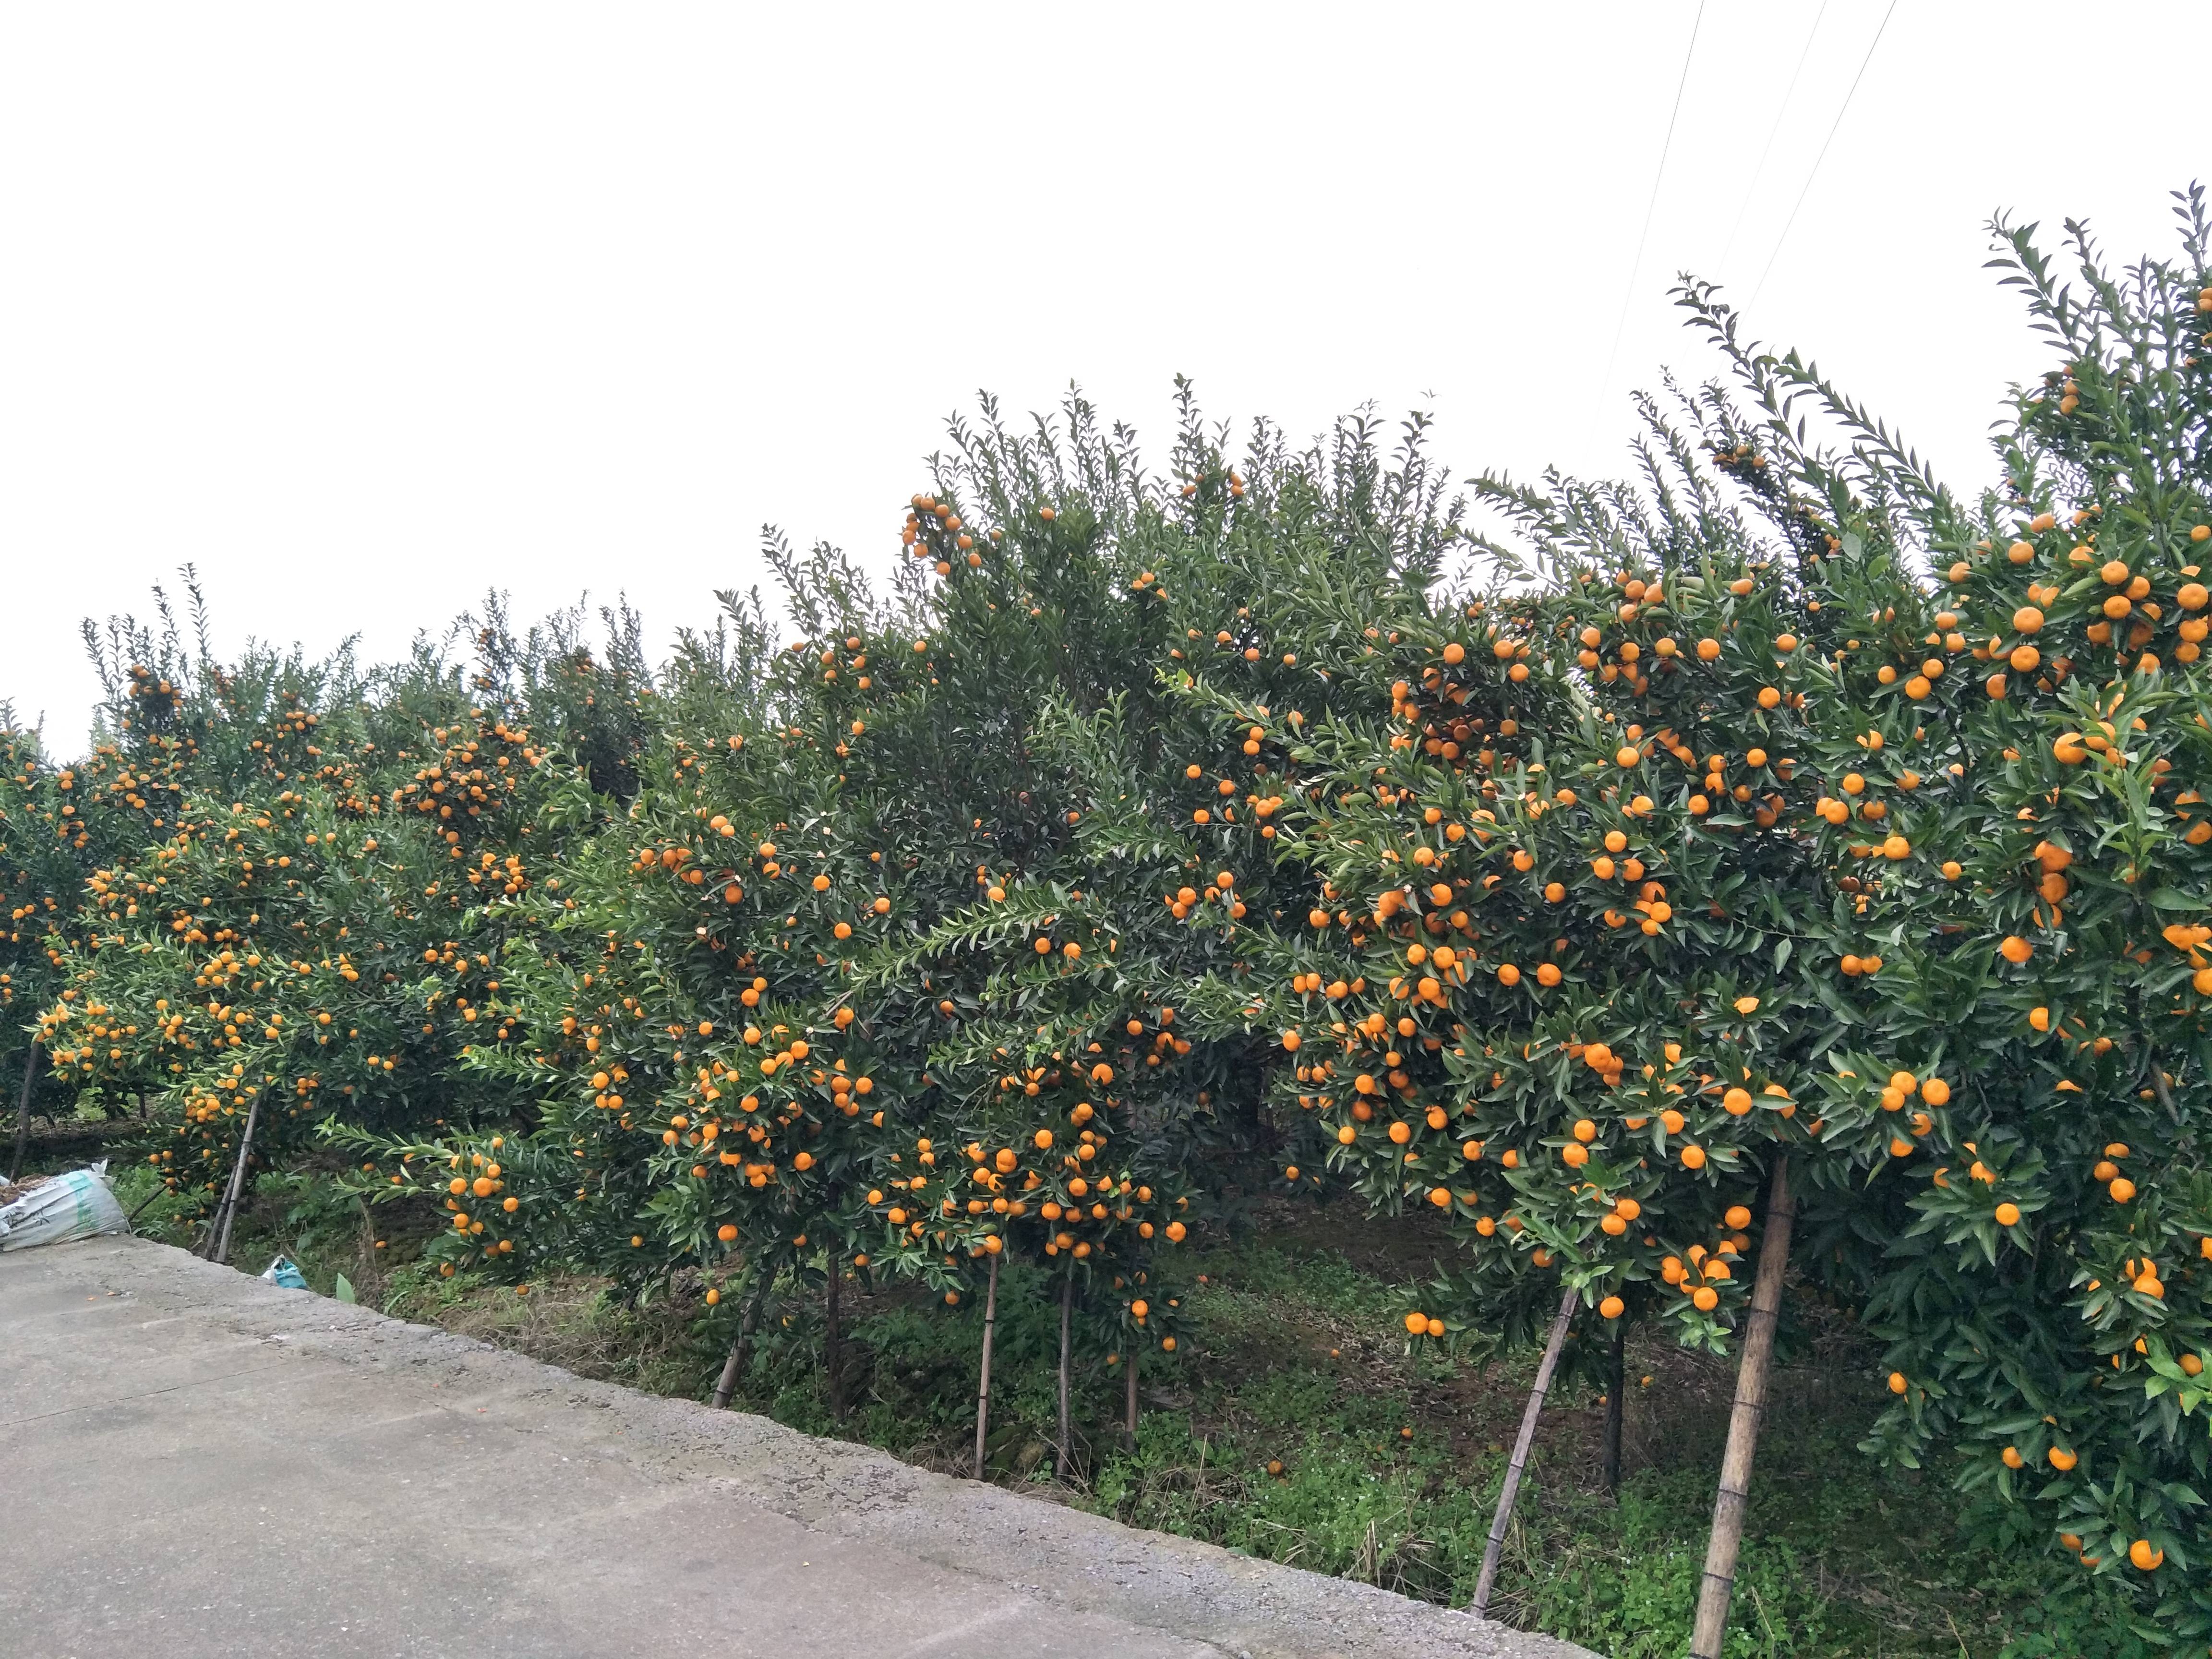 桂林市灵川县
马水橘开园了，约10万斤；
还有...